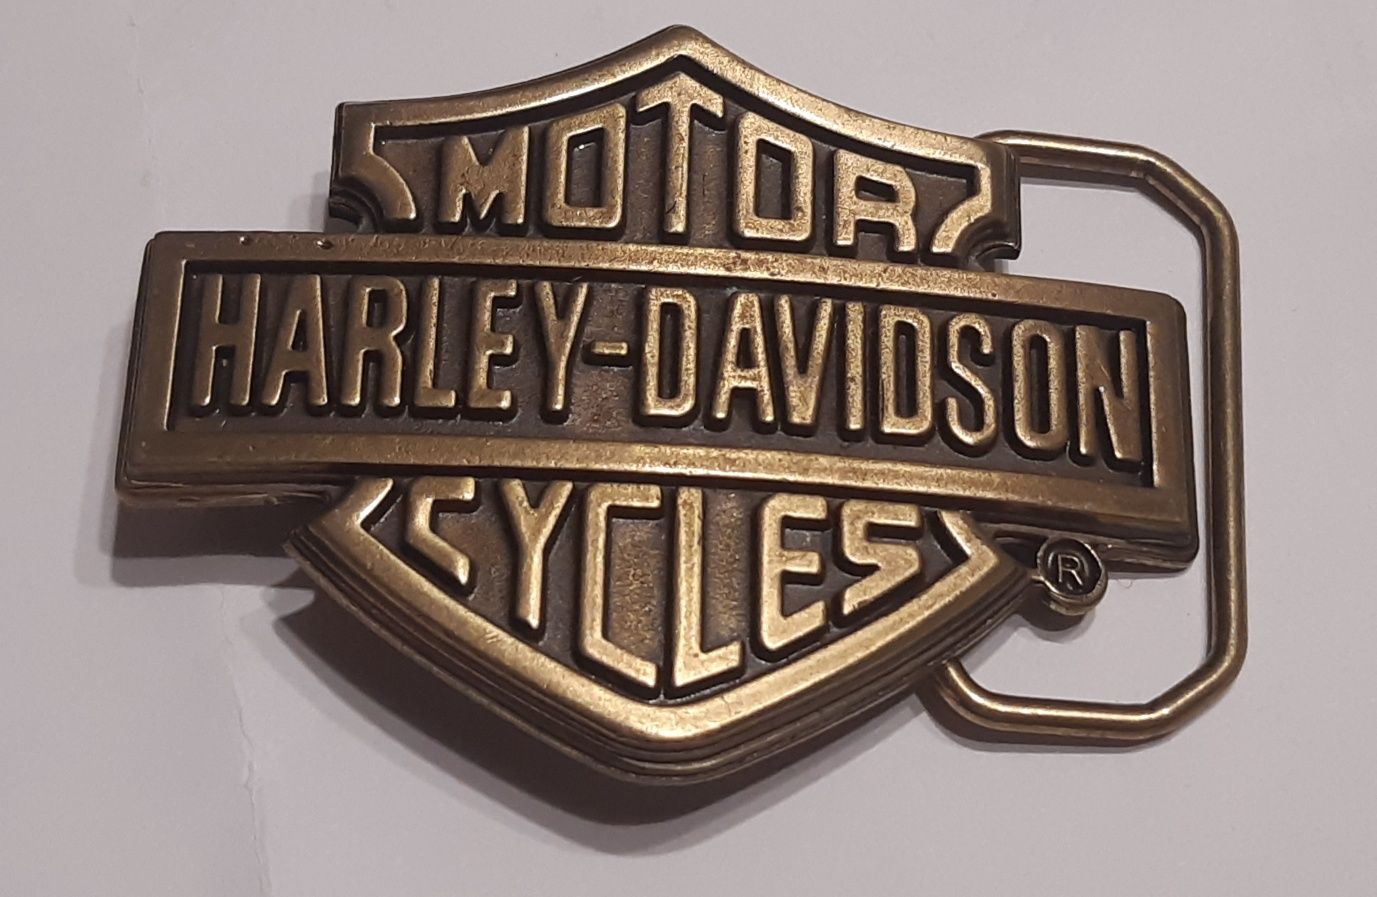 Harley Davidson klamra do paska 10
Nowa klamra do paska 
Kolor stare s